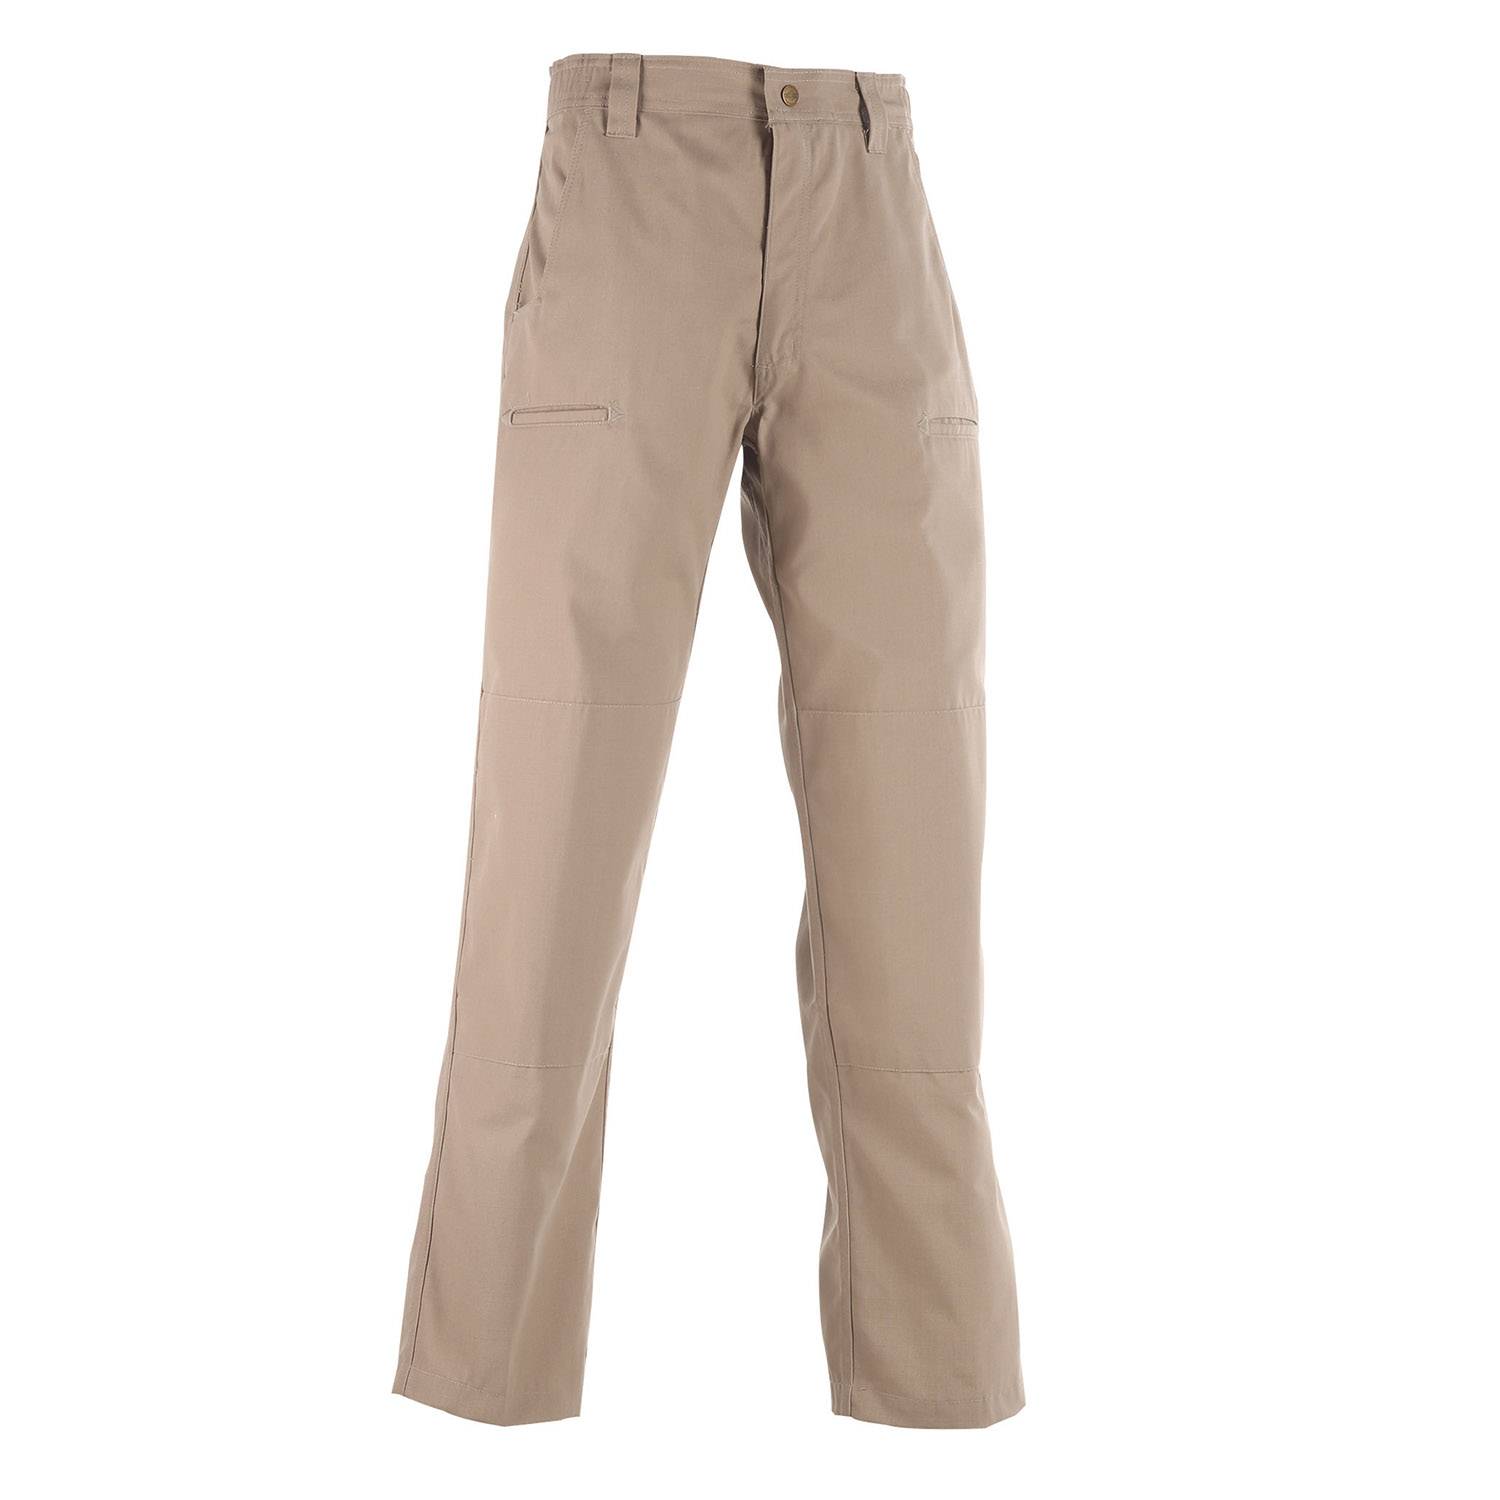 TRU SPEC 24 7 Simply Tactical Pants